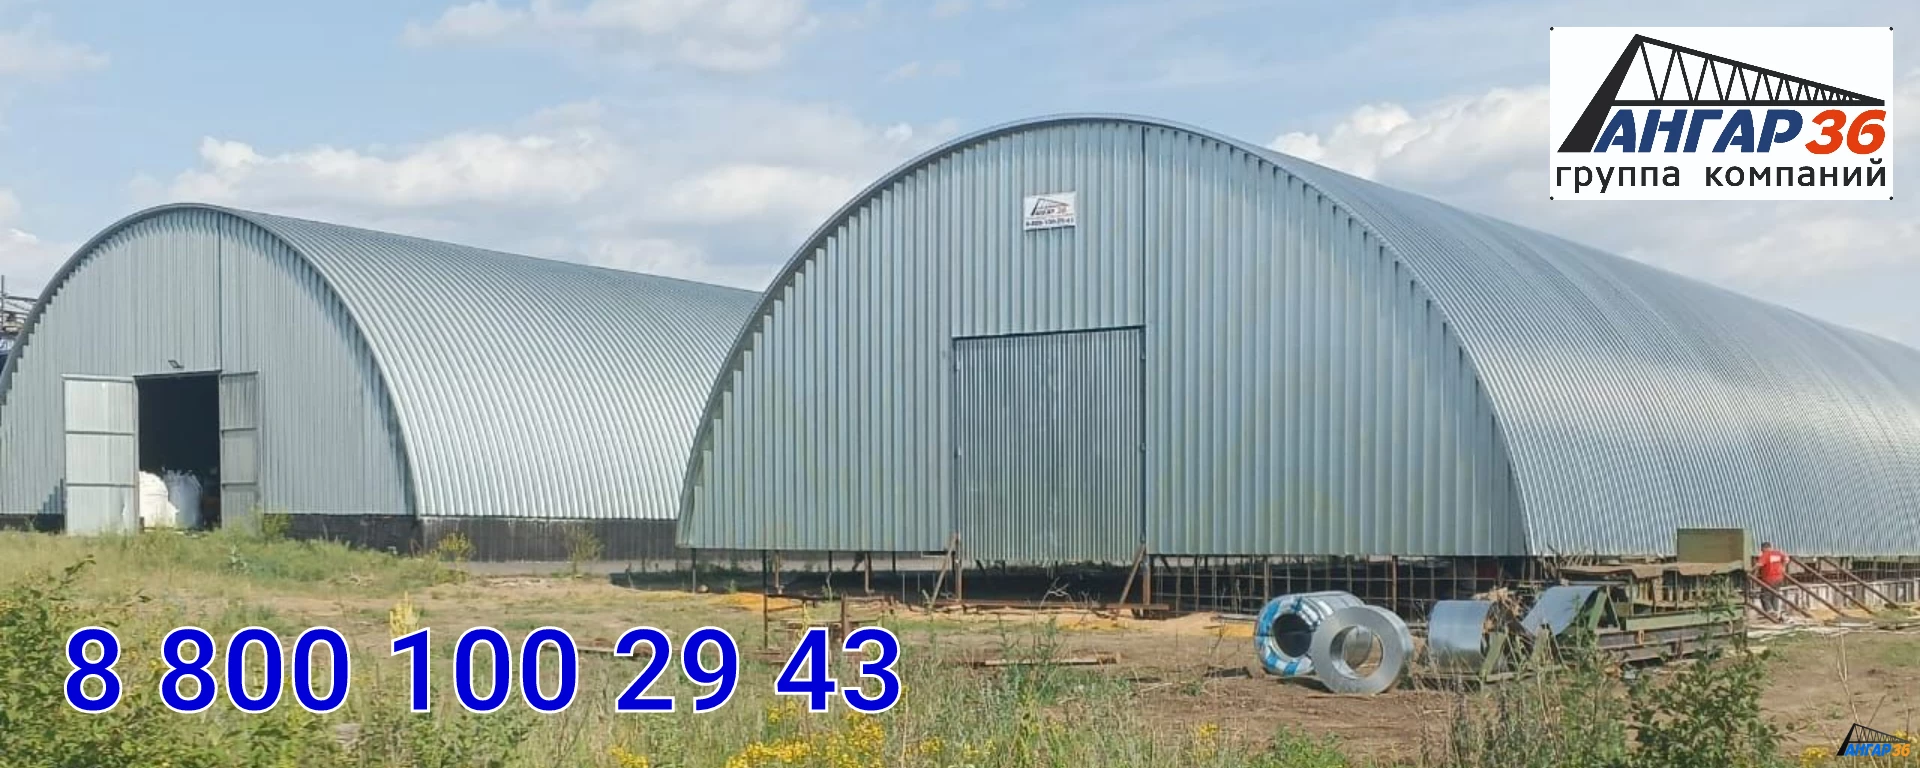 Построить зернохранилище арочного типа  в Новой Усмани, ГК "Ангар 36"